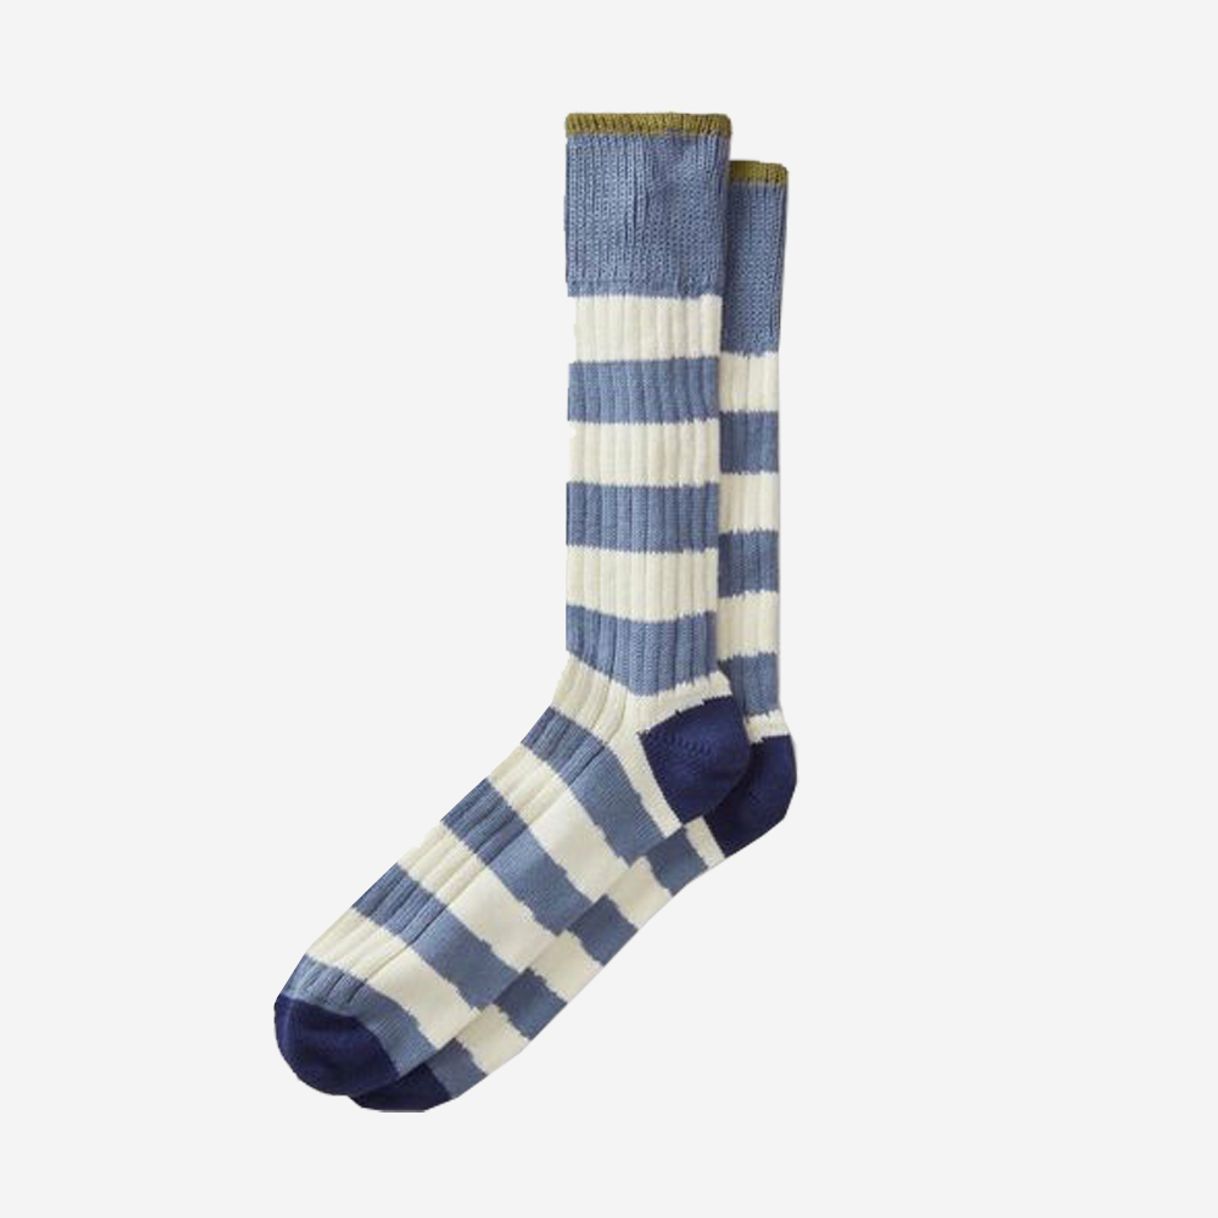 Aubin ‘Barlings’ Striped Socks